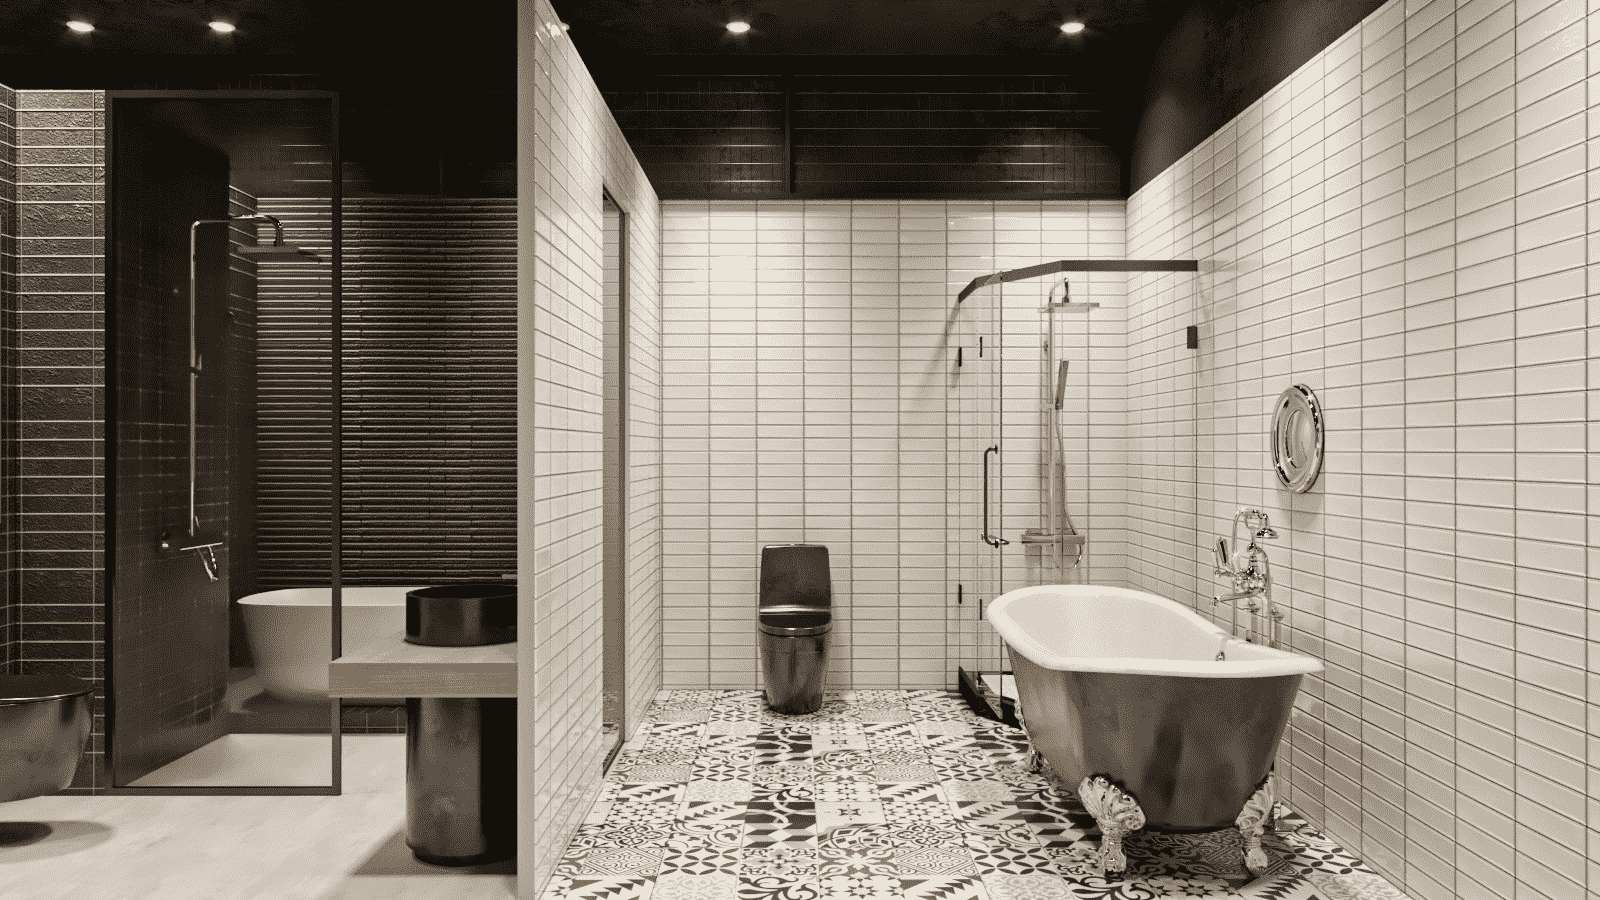 Phong cách thiết kế phòng tắm đẹp giúp cho không gian phòng tắm của bạn trở nên sang trọng, tinh tế và đẳng cấp hơn thường ngày. Với chất liệu và thiết bị cao cấp, không gian phòng tắm sẽ trở nên đẹp mắt hơn bao giờ hết. Hãy để chúng tôi giúp bạn thực hiện phong cách thiết kế phòng tắm đẹp nhất cho ngôi nhà của bạn.